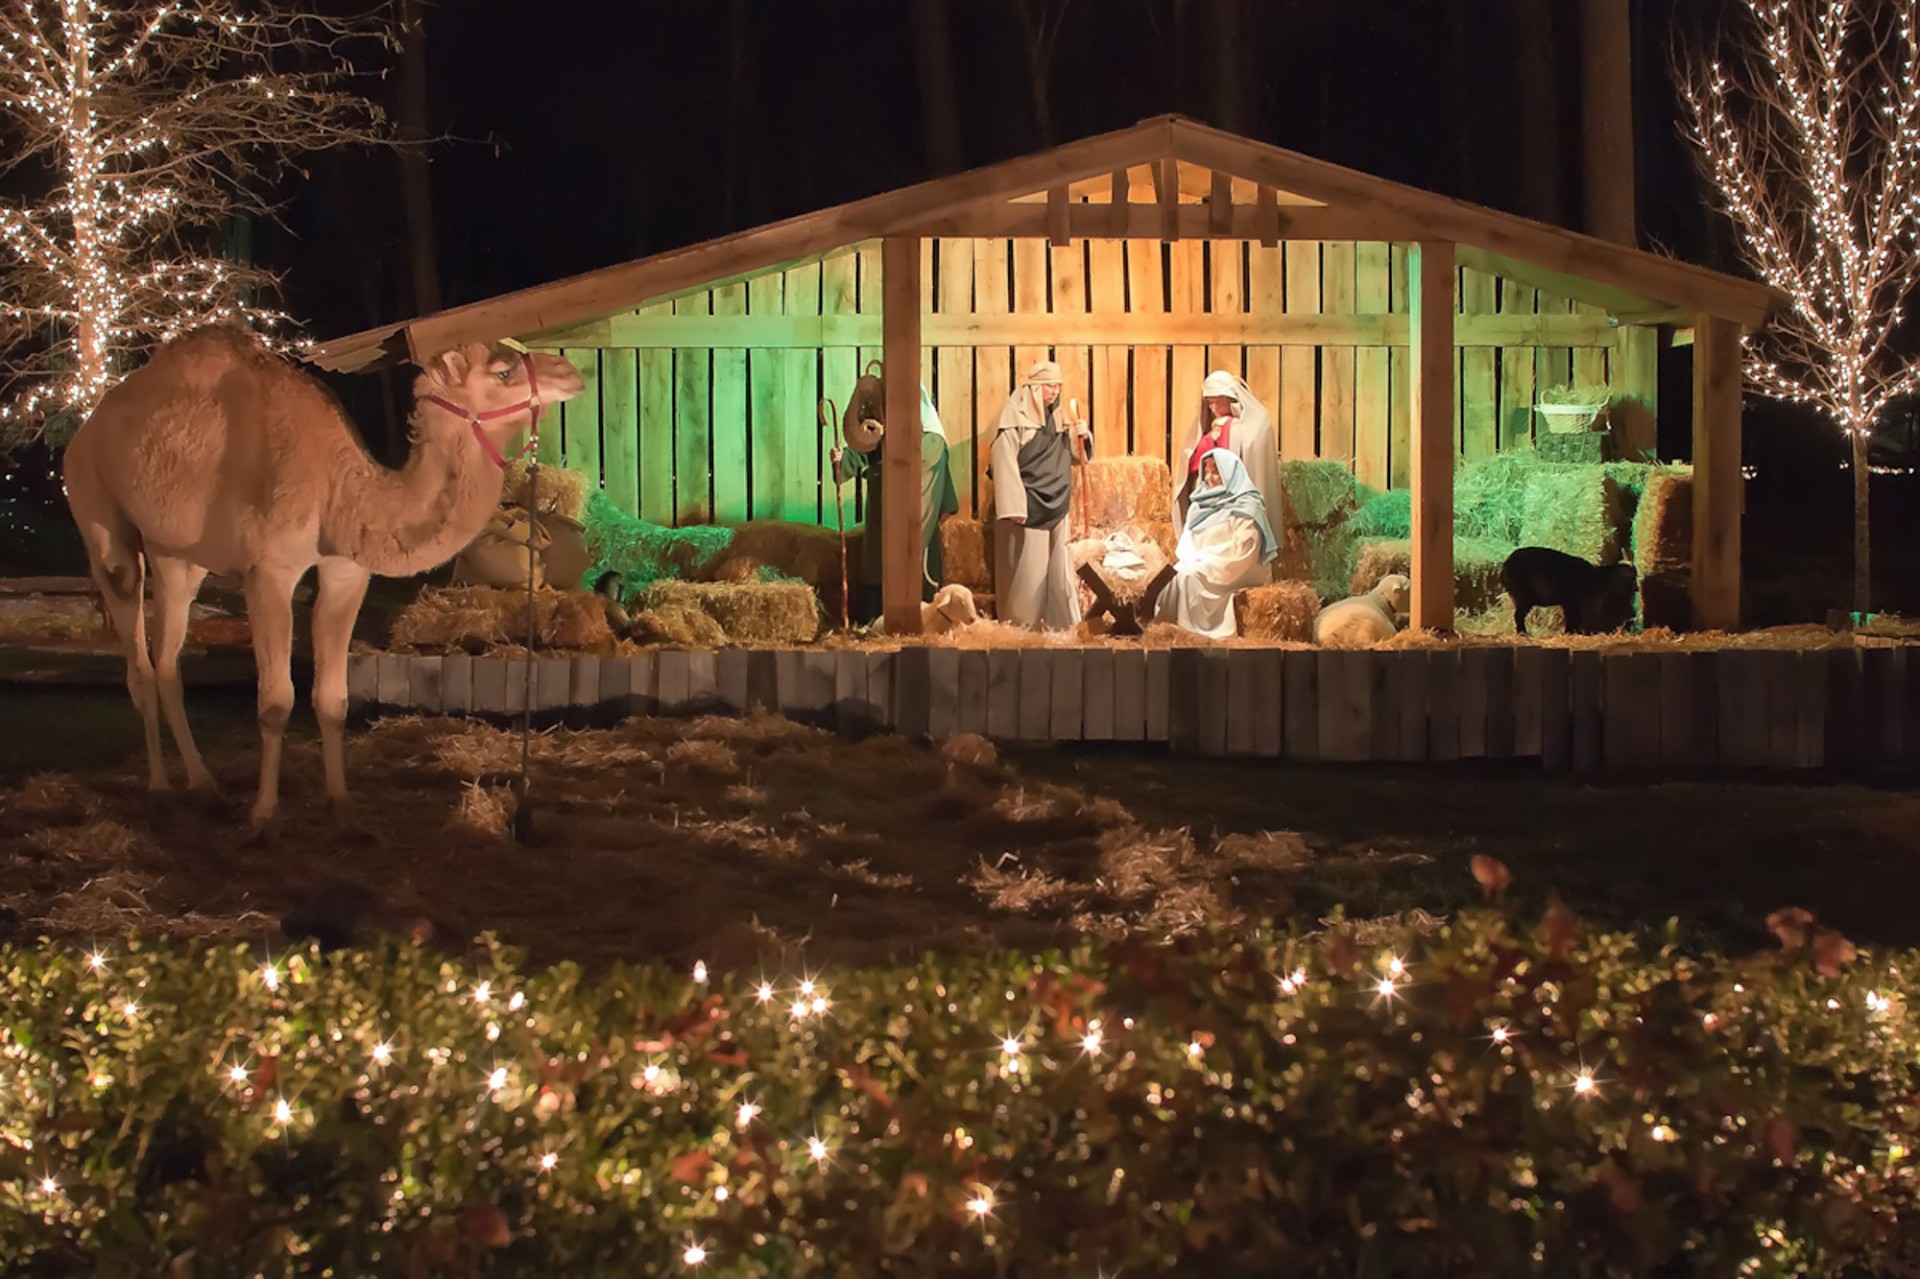 Creche (Nativity Scene)